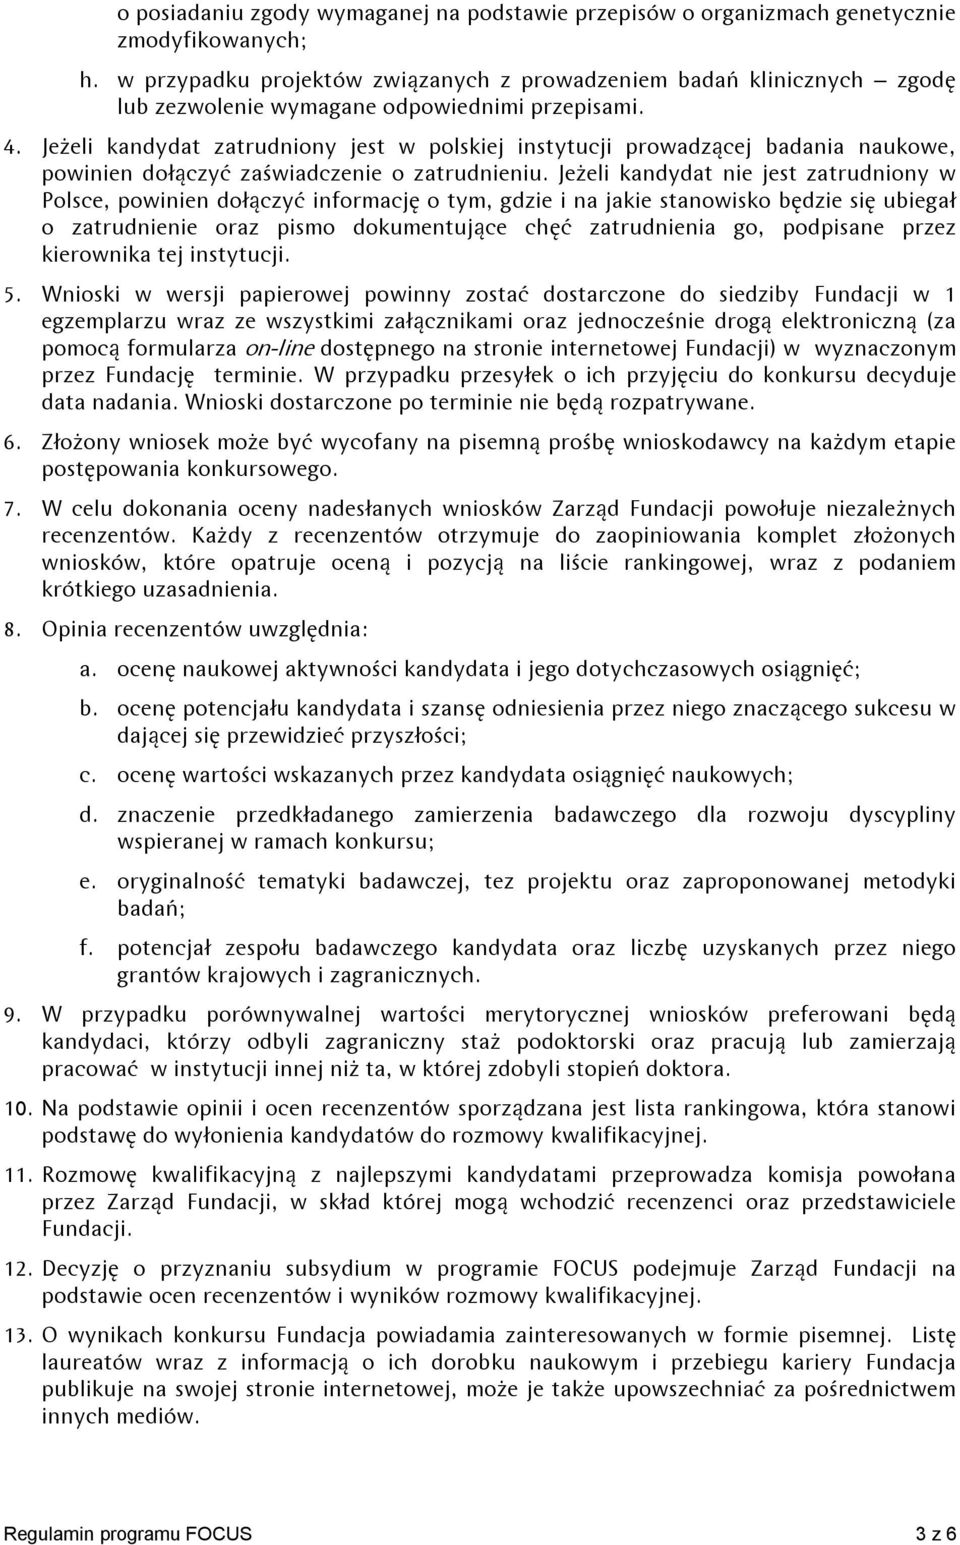 Jeżeli kandydat zatrudniony jest w polskiej instytucji prowadzącej badania naukowe, powinien dołączyć zaświadczenie o zatrudnieniu.